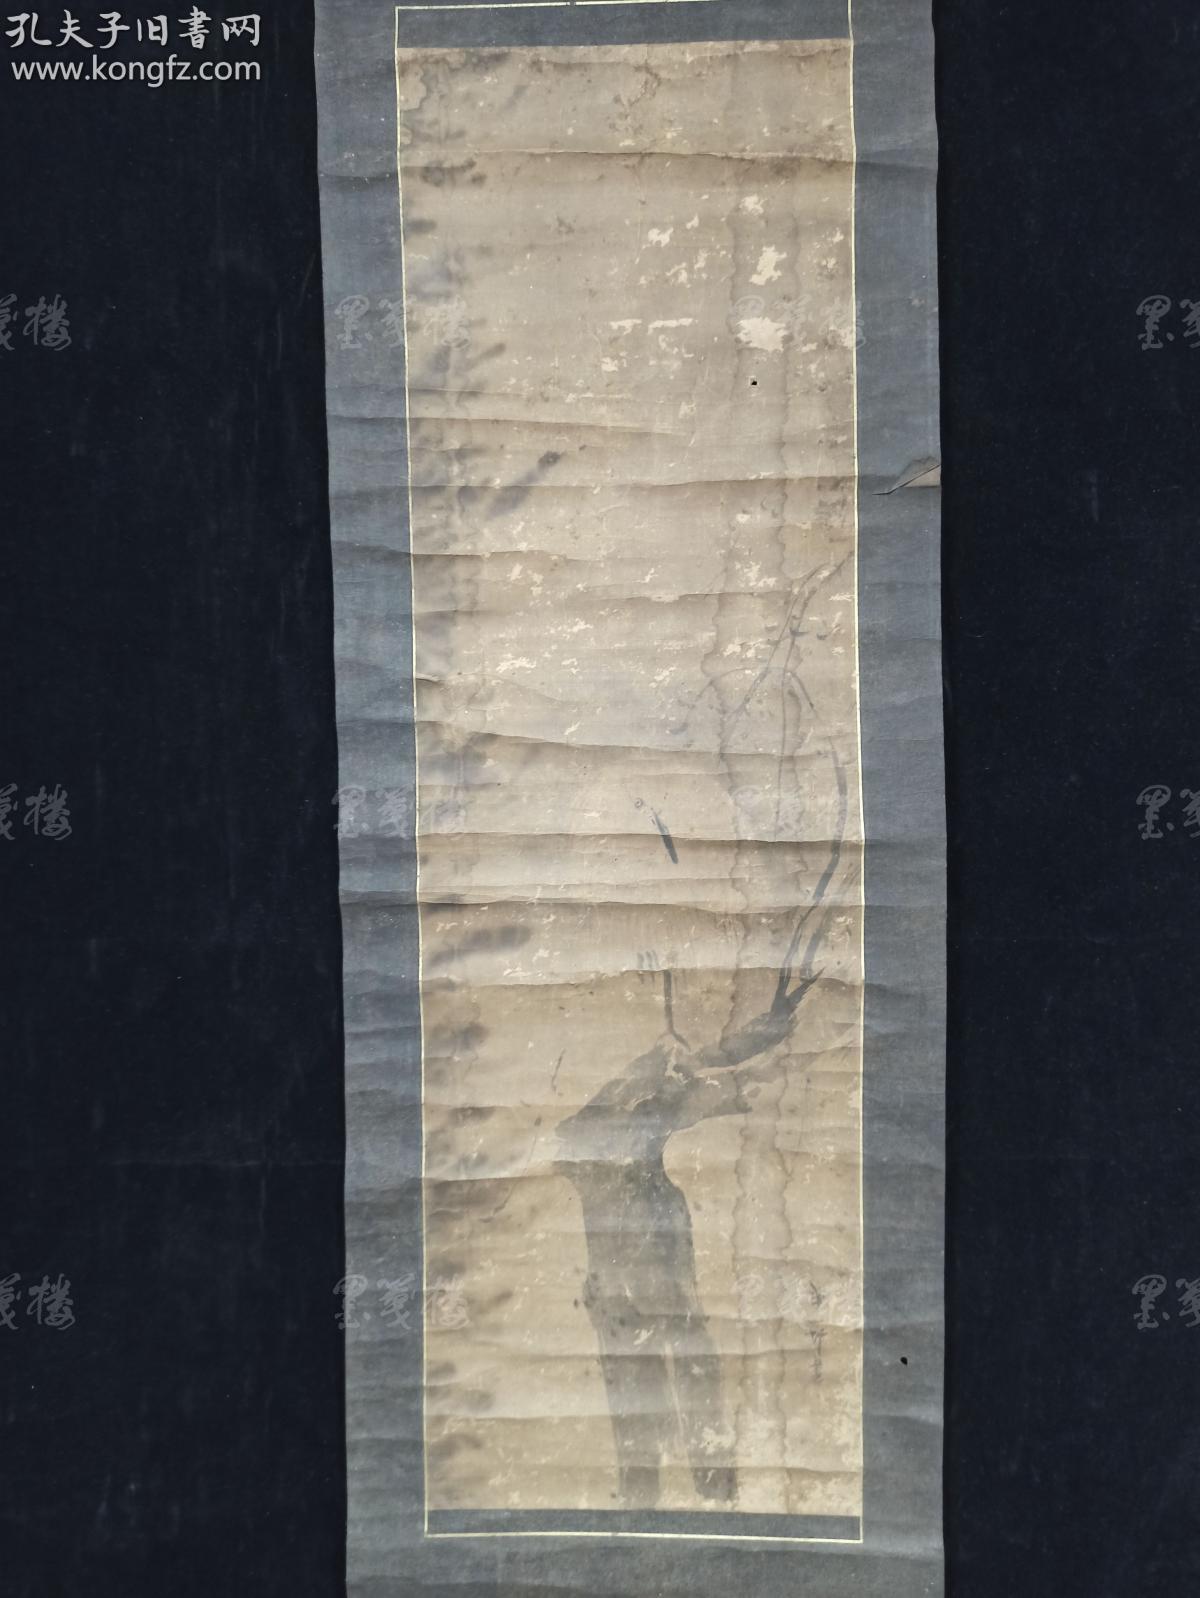 日本回流 日本风俗画派代表画家英一蝶 1652 1724 水墨画作品 干枝图 一幅 纸本立轴 画心约2 5平尺 Hxtx3114 孔夫子旧书网